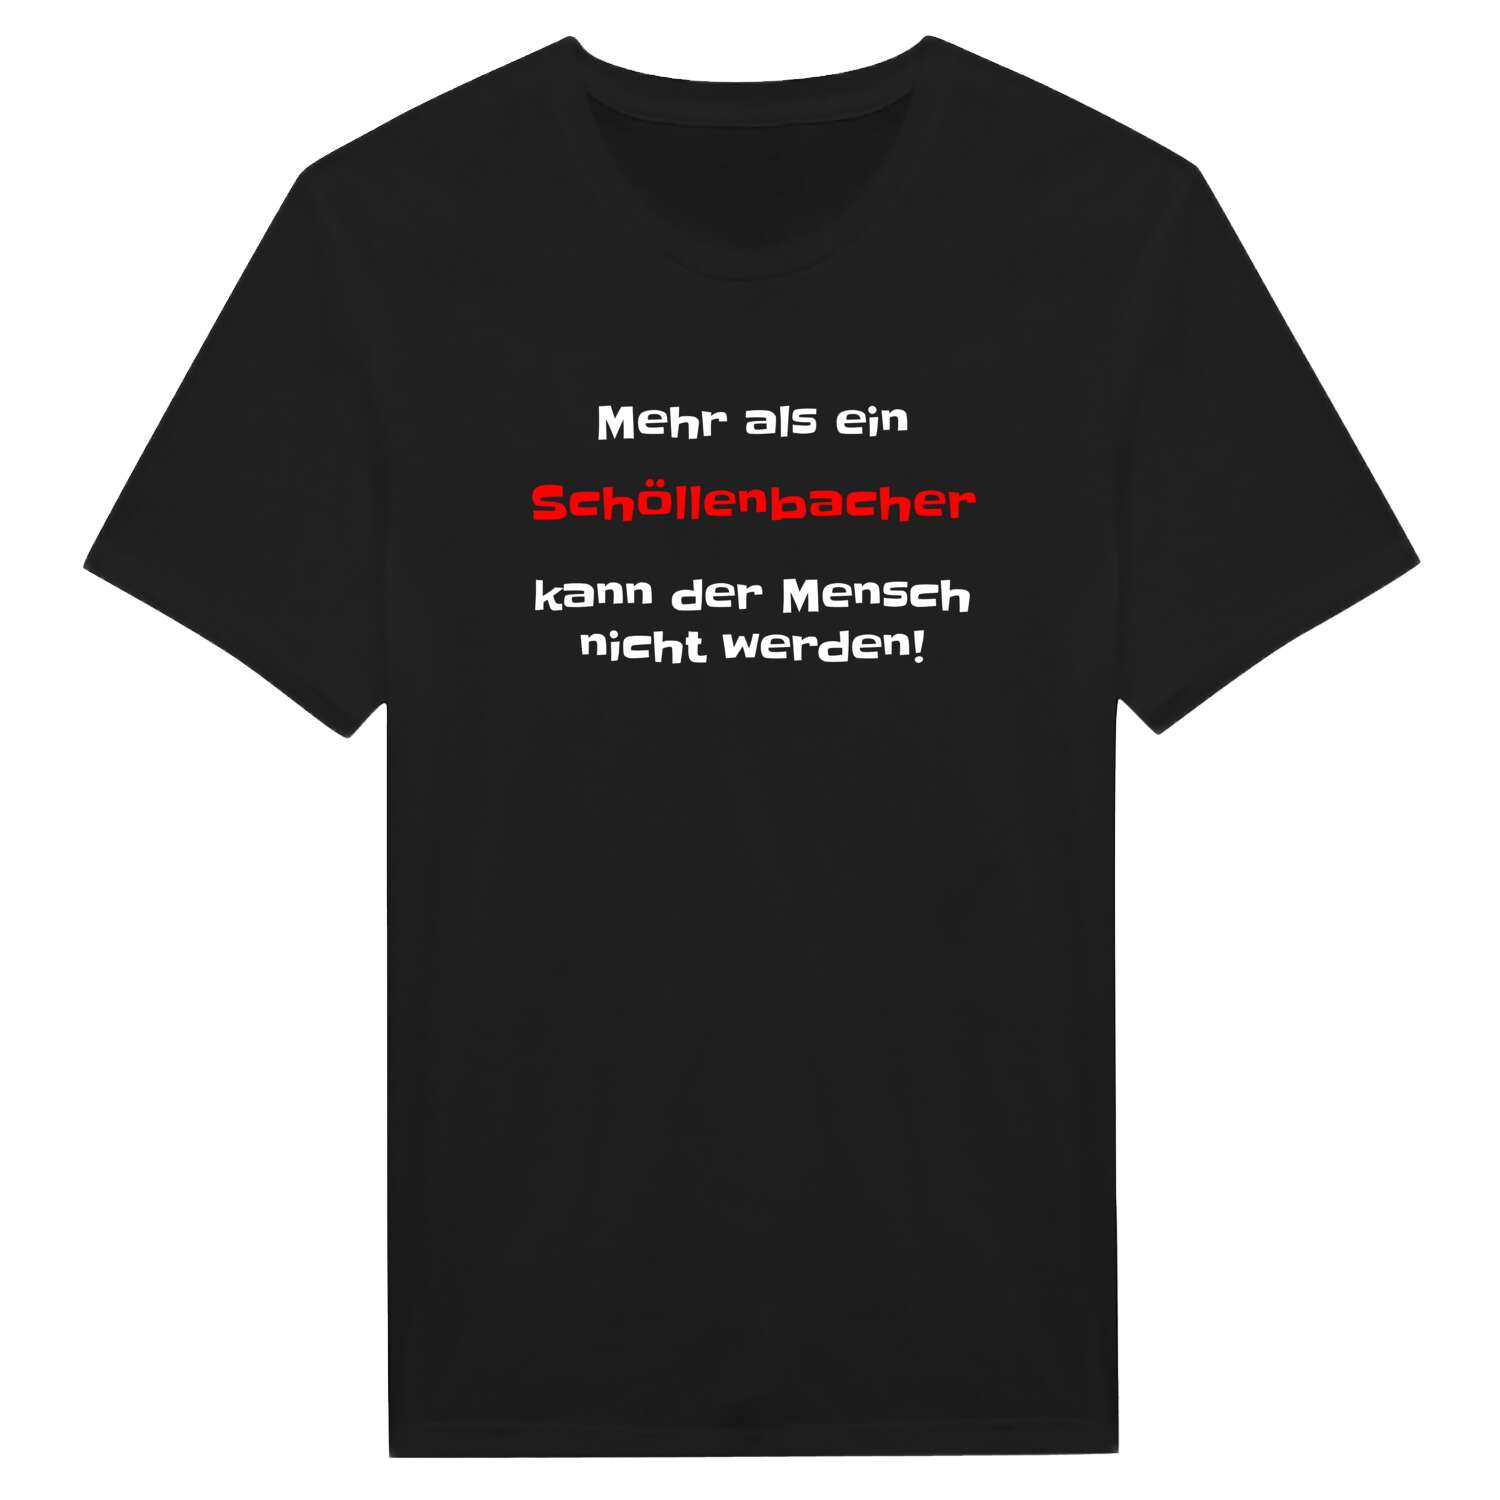 Schöllenbach T-Shirt »Mehr als ein«